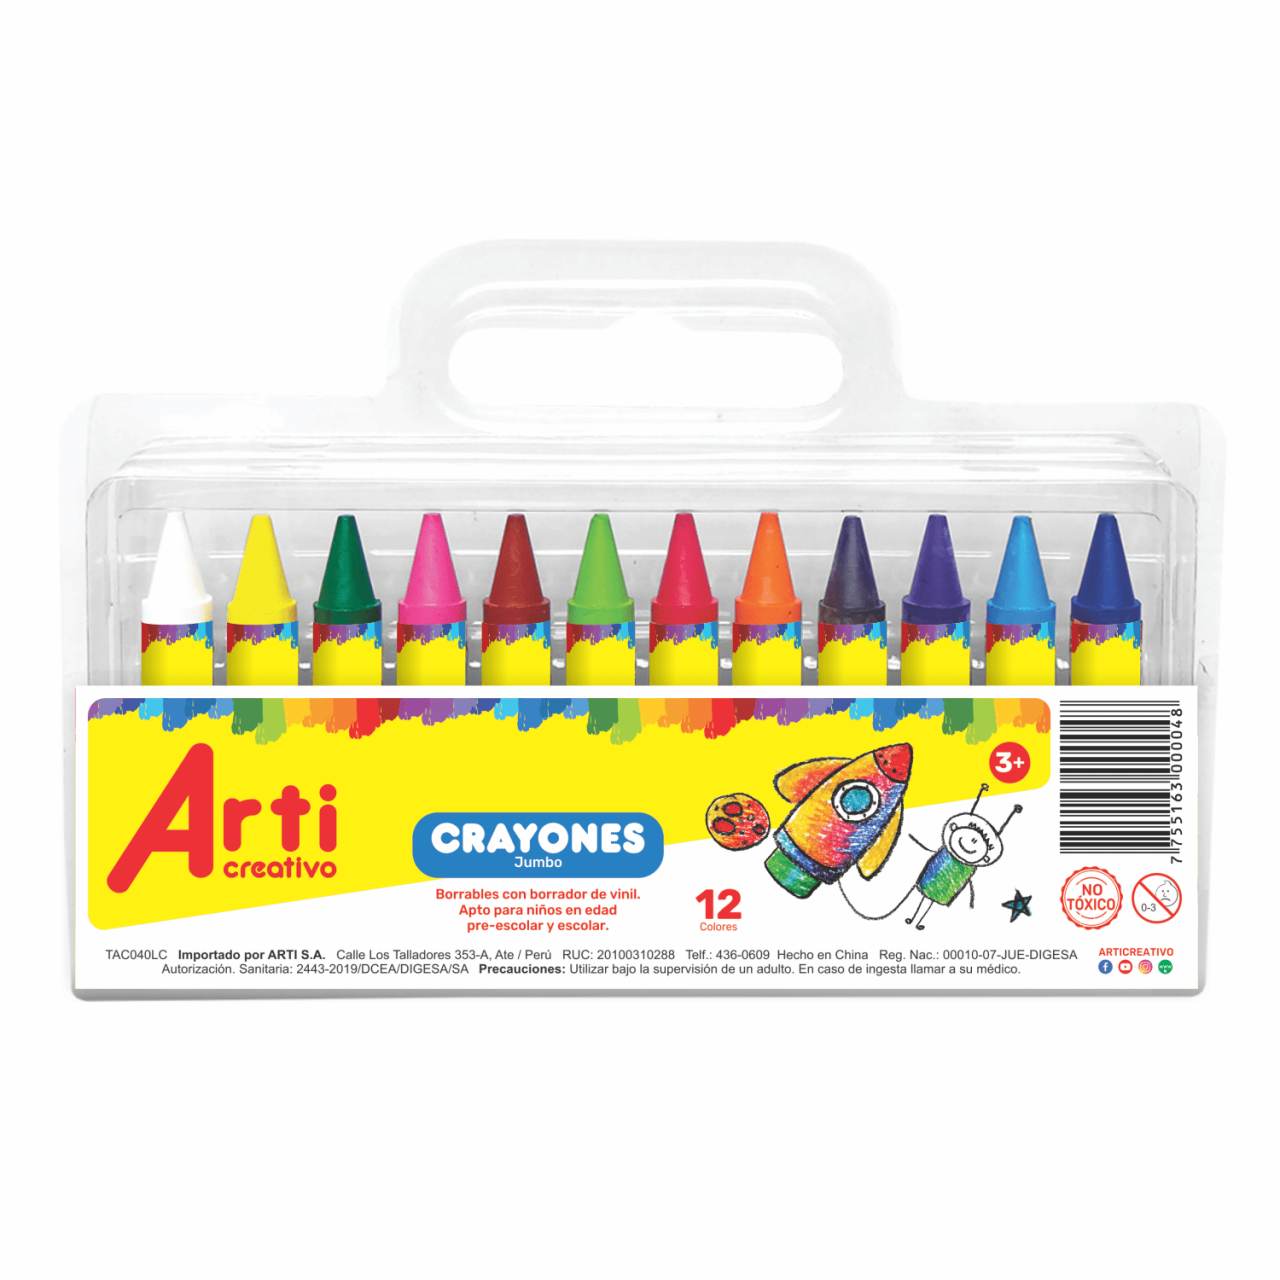 Juego clásico para niños de 4 + Años Crayola Maletín Rotuladores